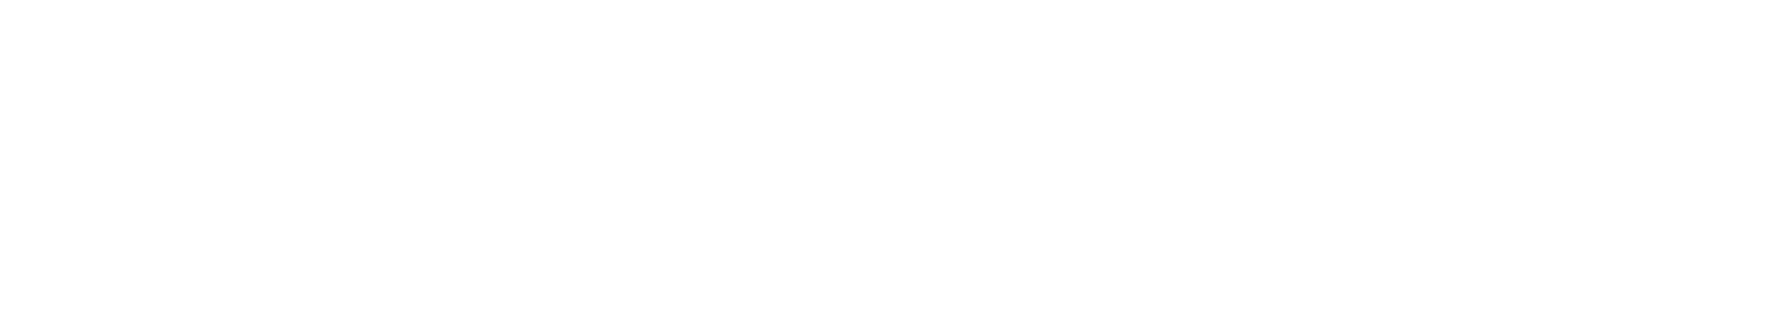 novartis_logo_rev_rgb